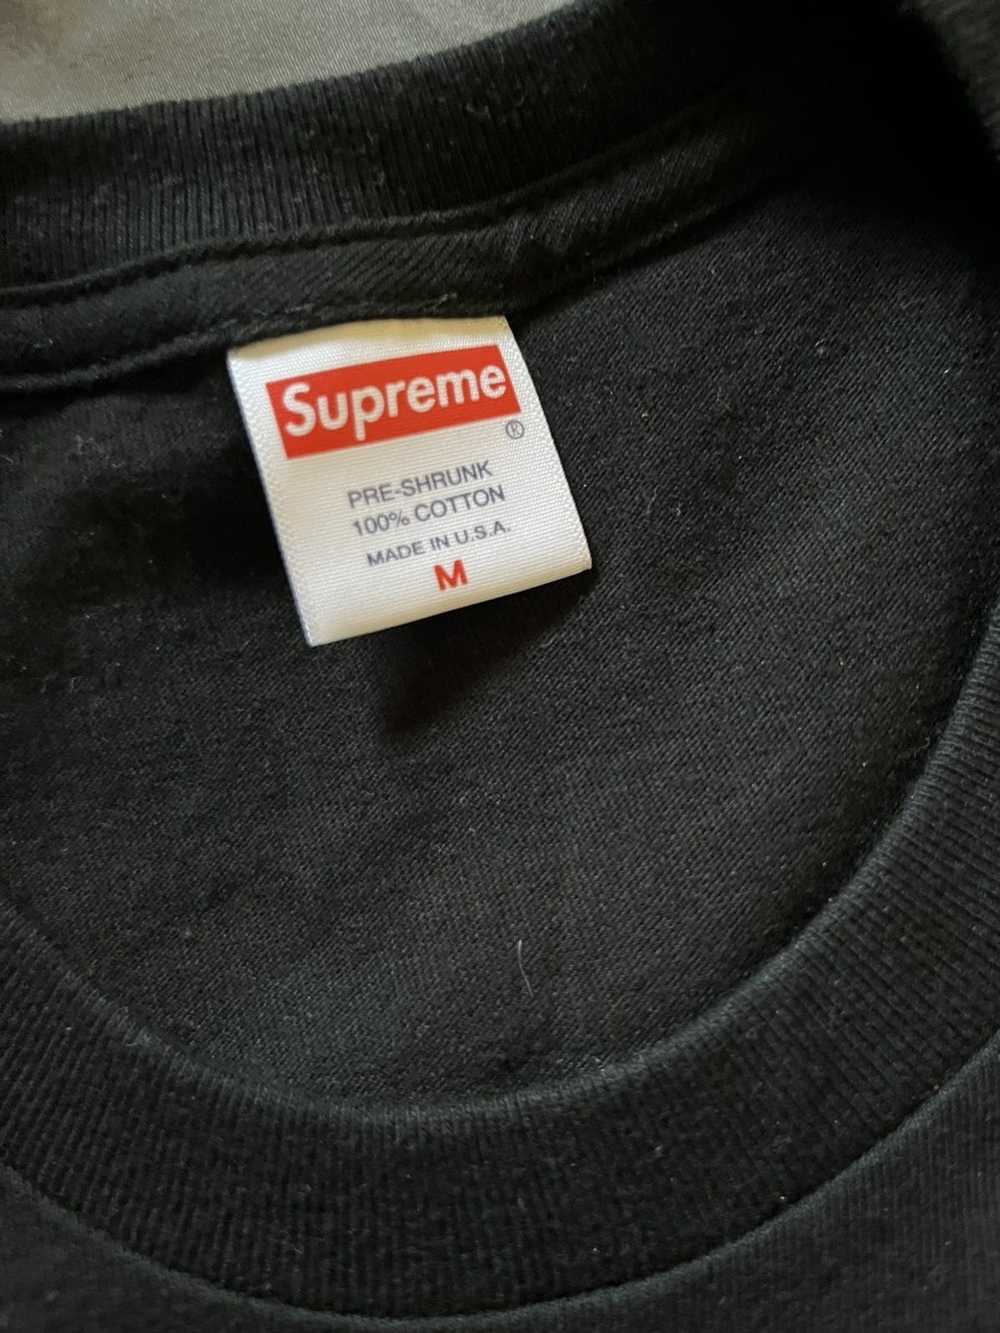 Supreme supreme t shirt - image 2